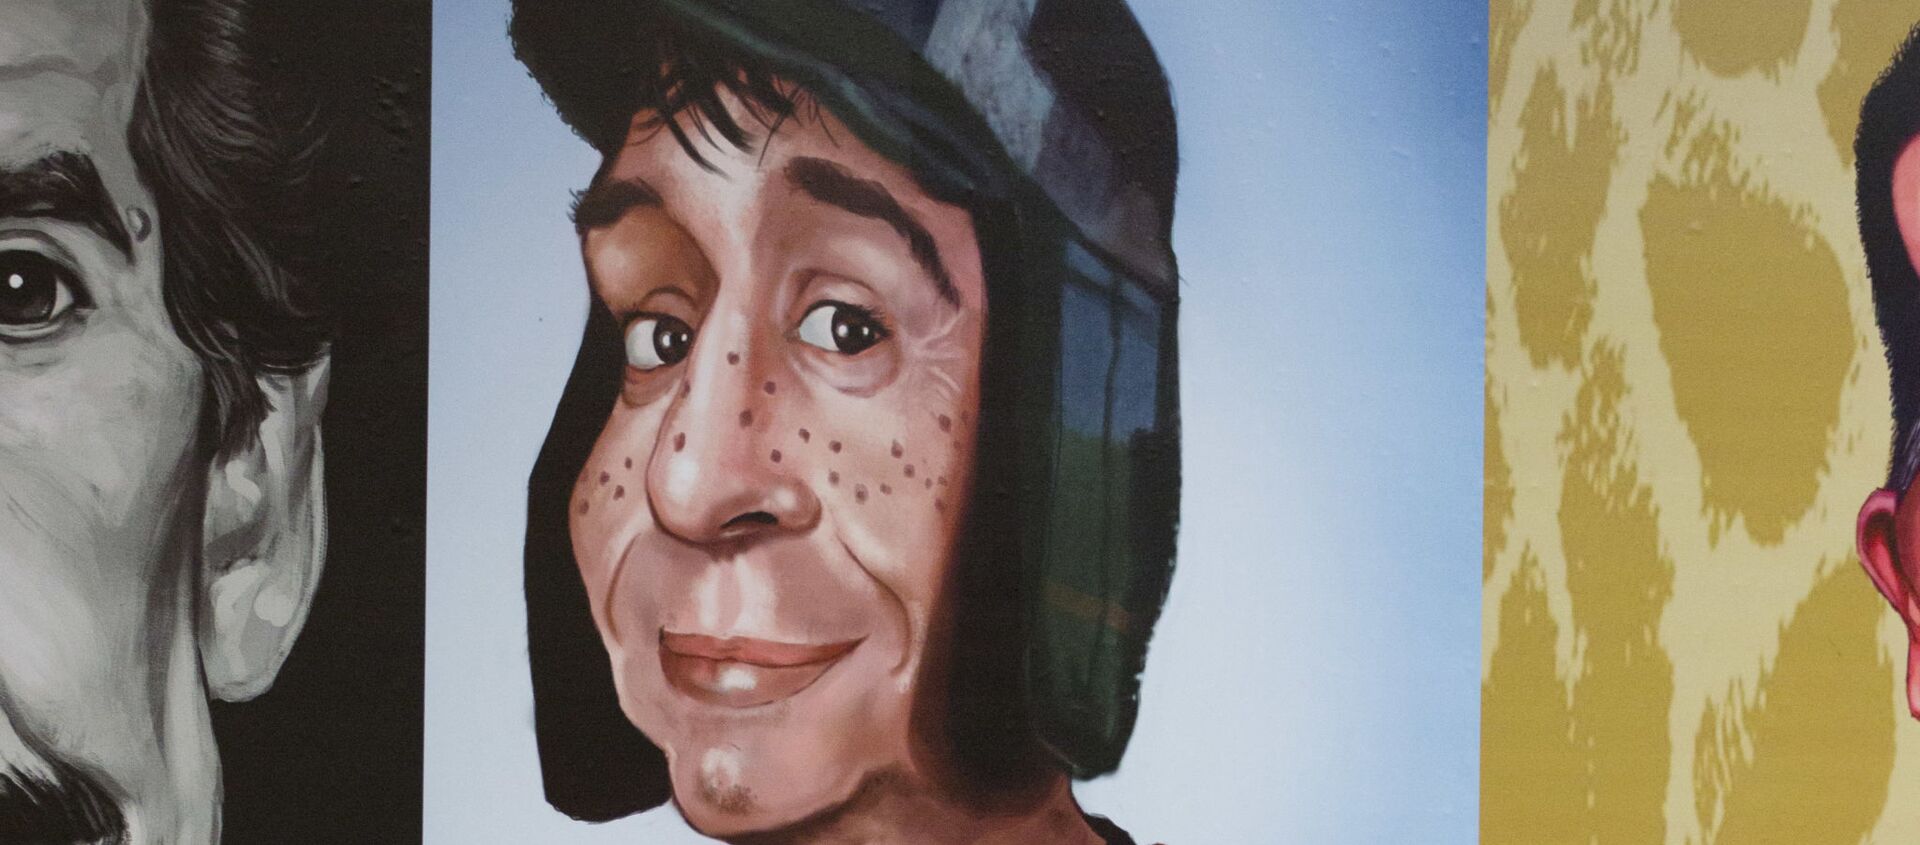 Una pintura en homenaje al Chavo del 8, uno de los personajes de Roberto Gómez Bolaños, el Chespirito - Sputnik Mundo, 1920, 02.08.2020